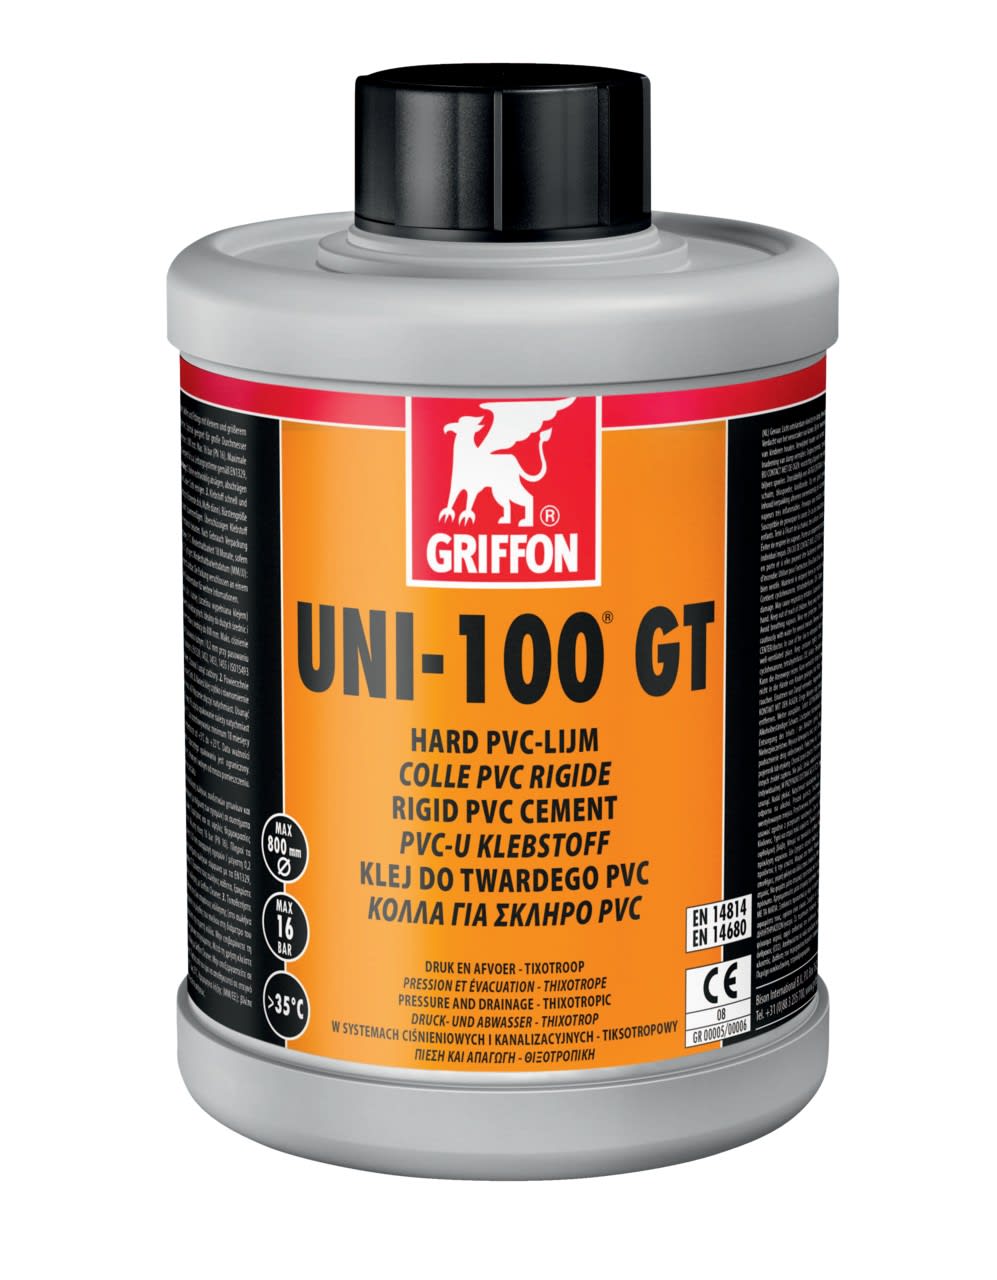 Griffon - UNI-100 GT colle PVC 1 L